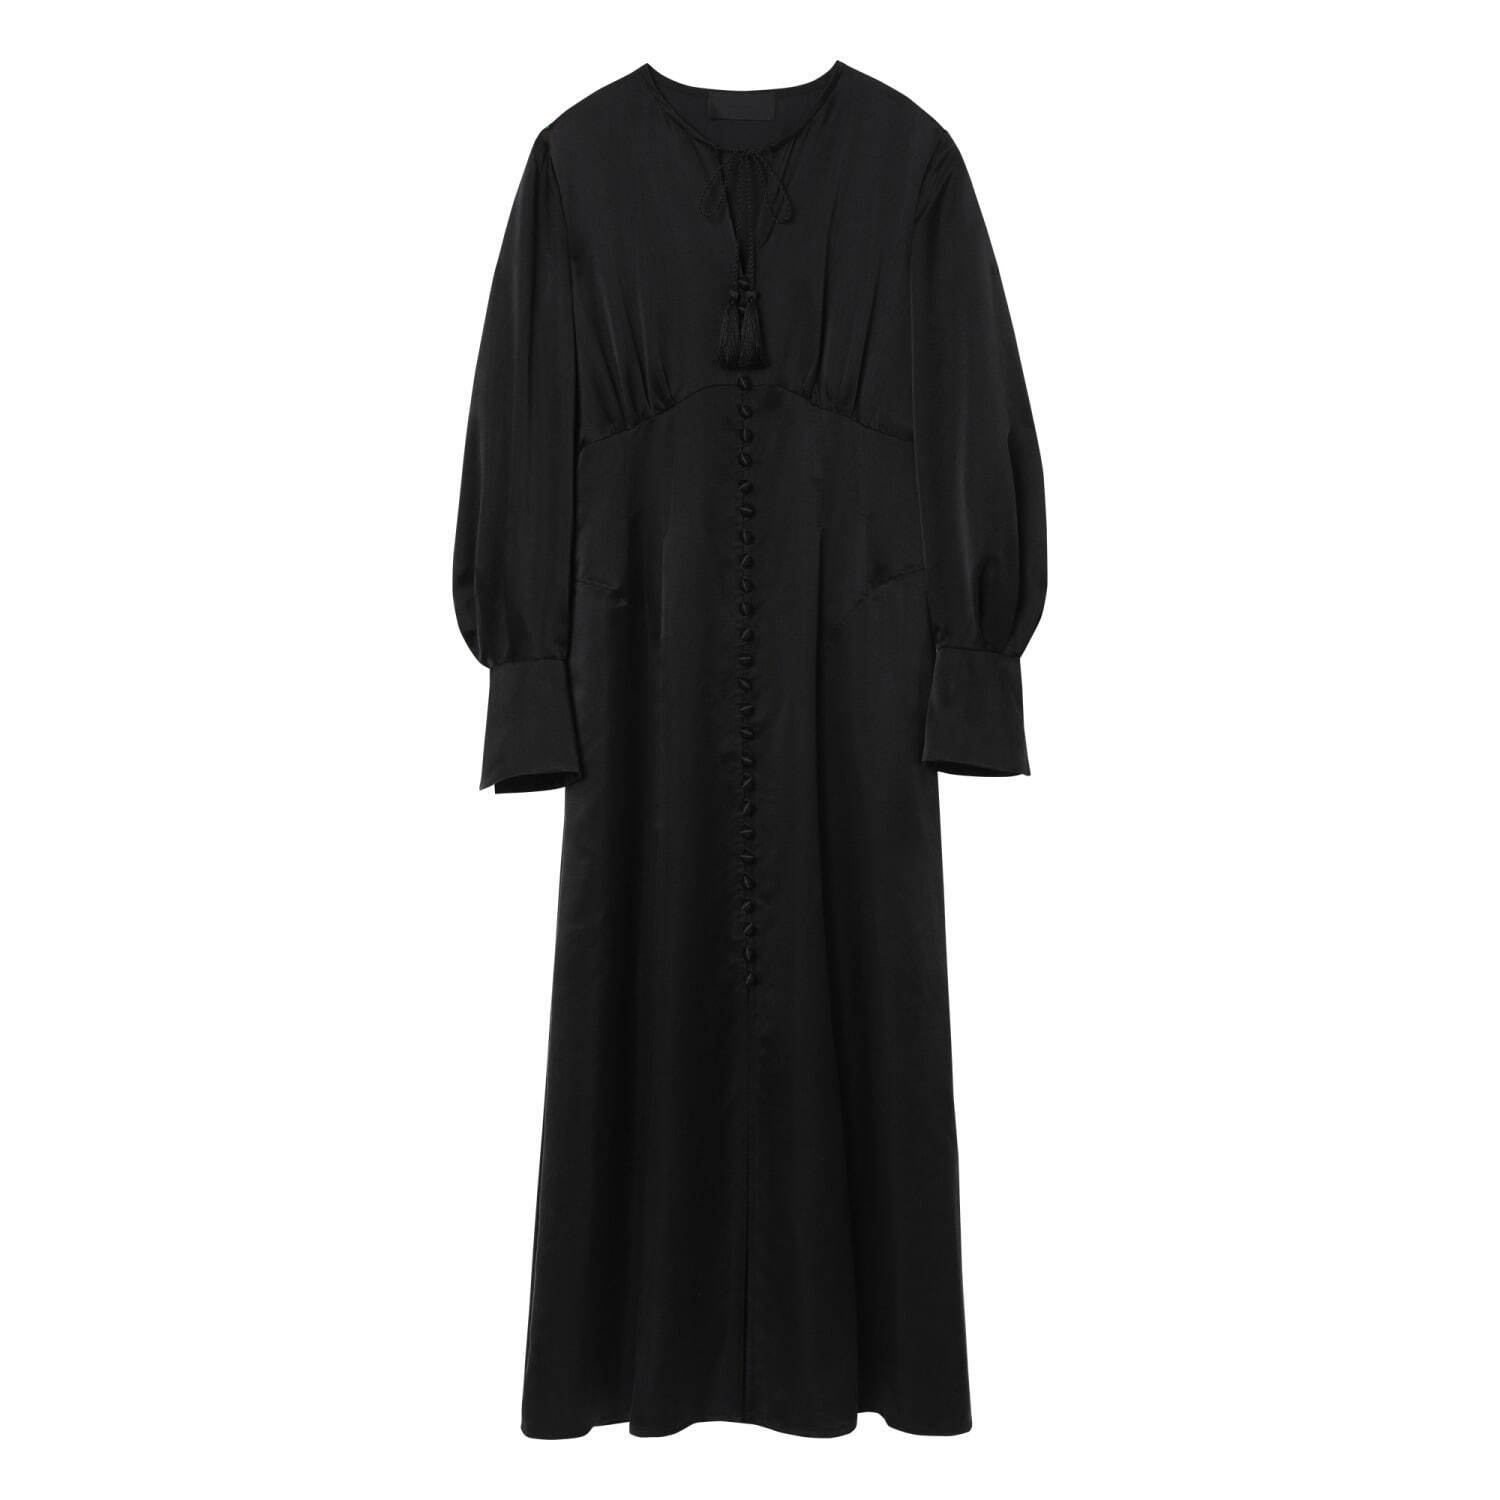 4 ベーシック シルク マルチボタン ドレス 121,000円(税込)